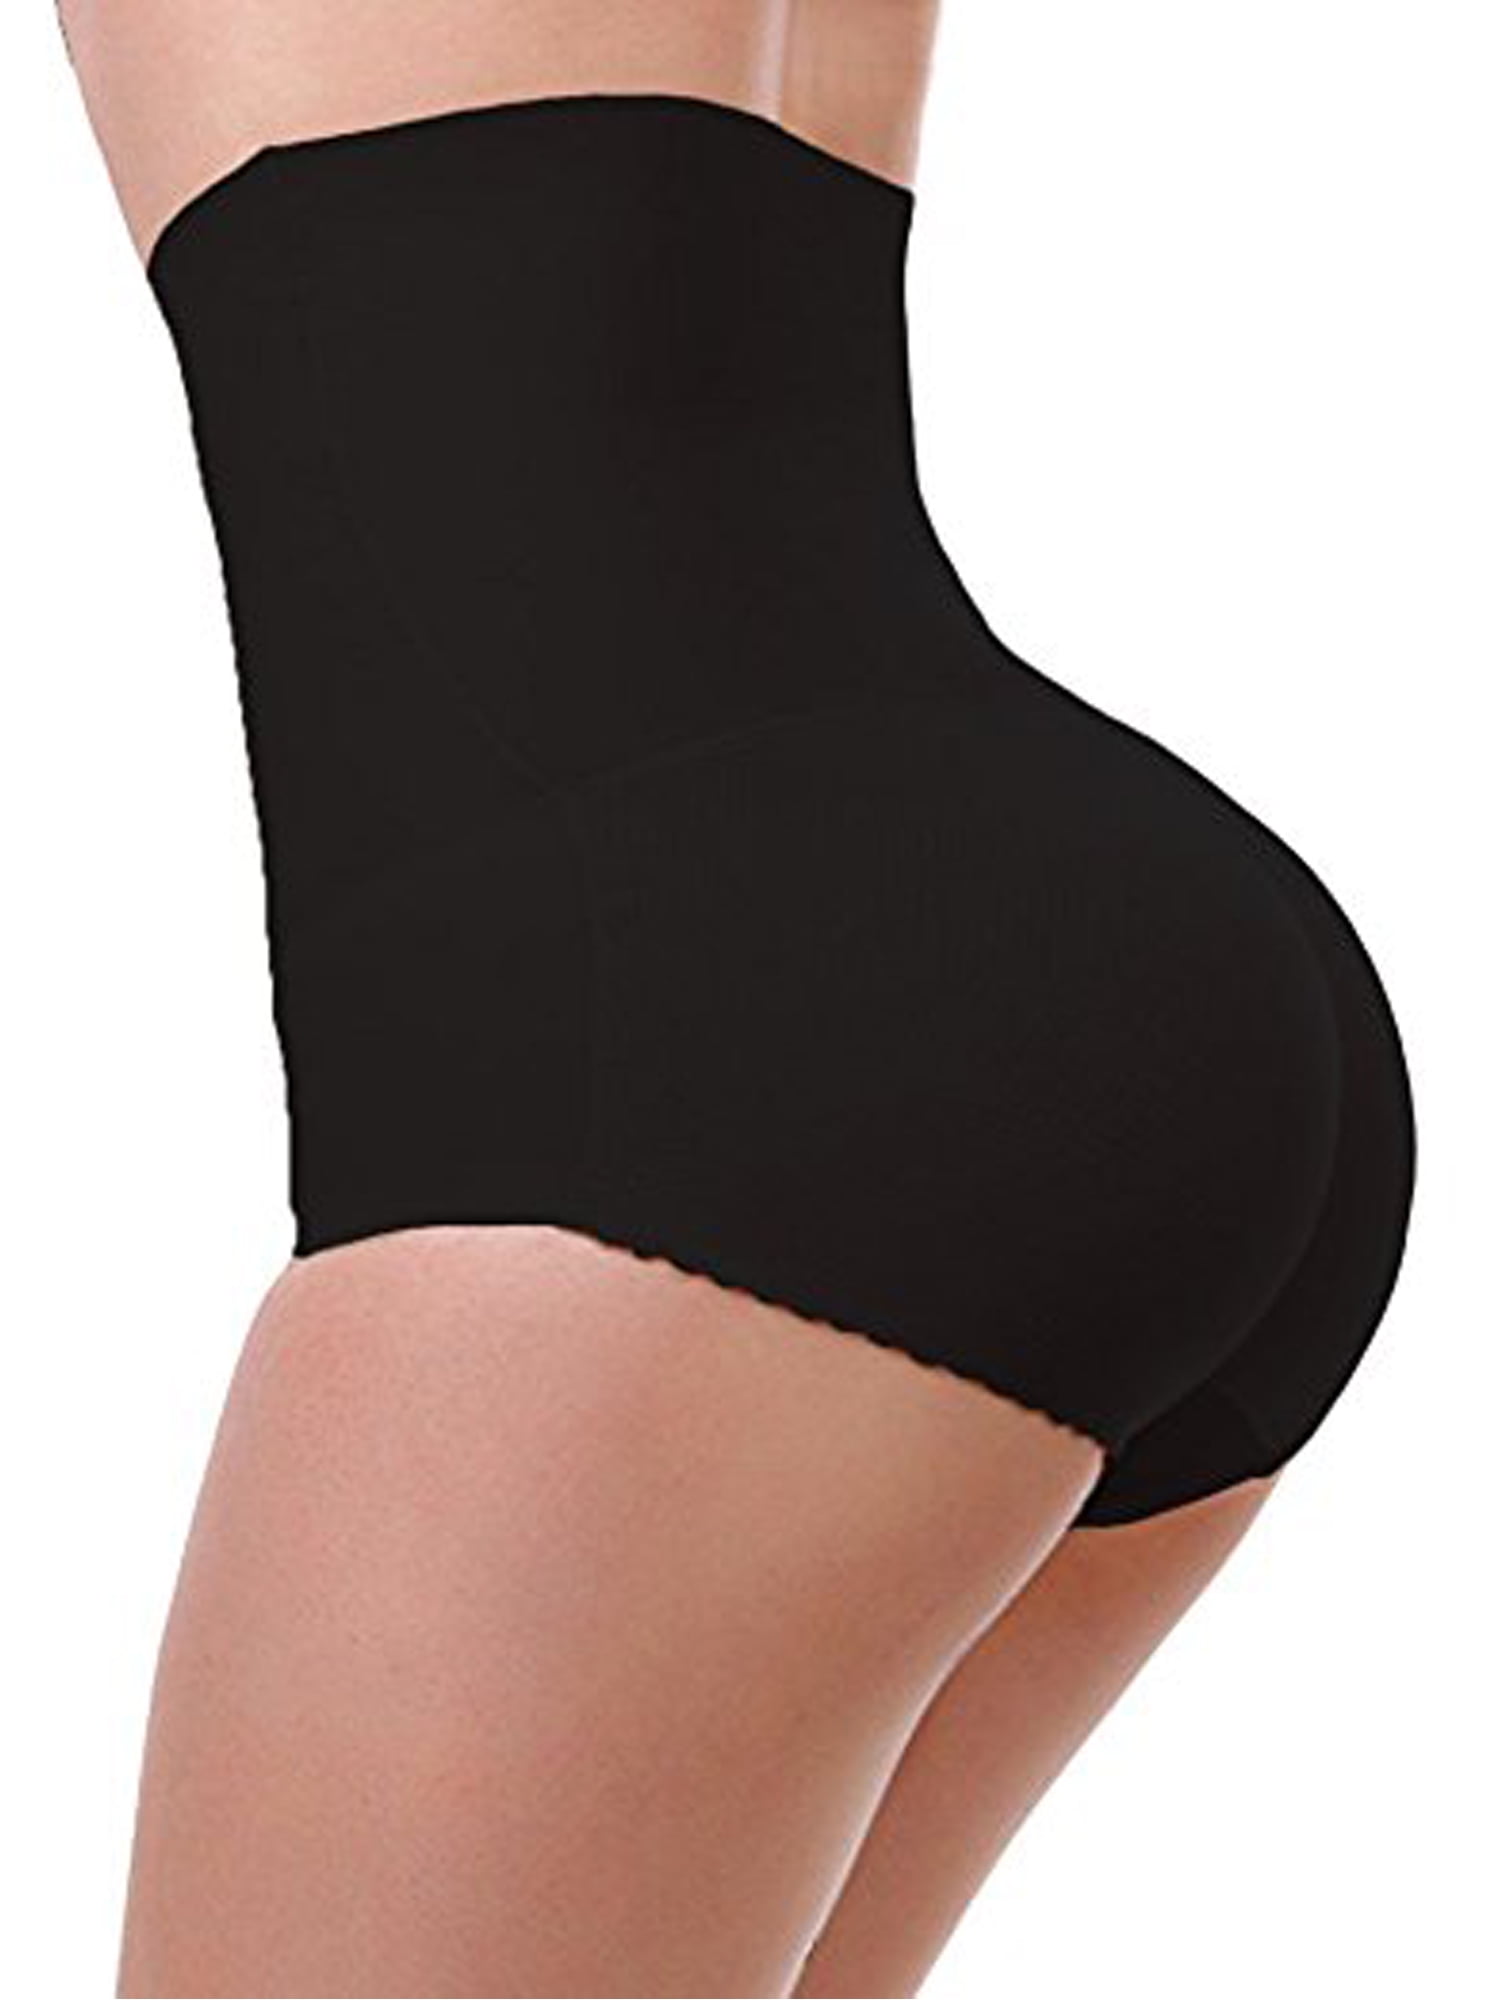 SENERY Women High Waist Cincher Butt Lifter Control Panties Tummy Girdle Shapewear Briefs 